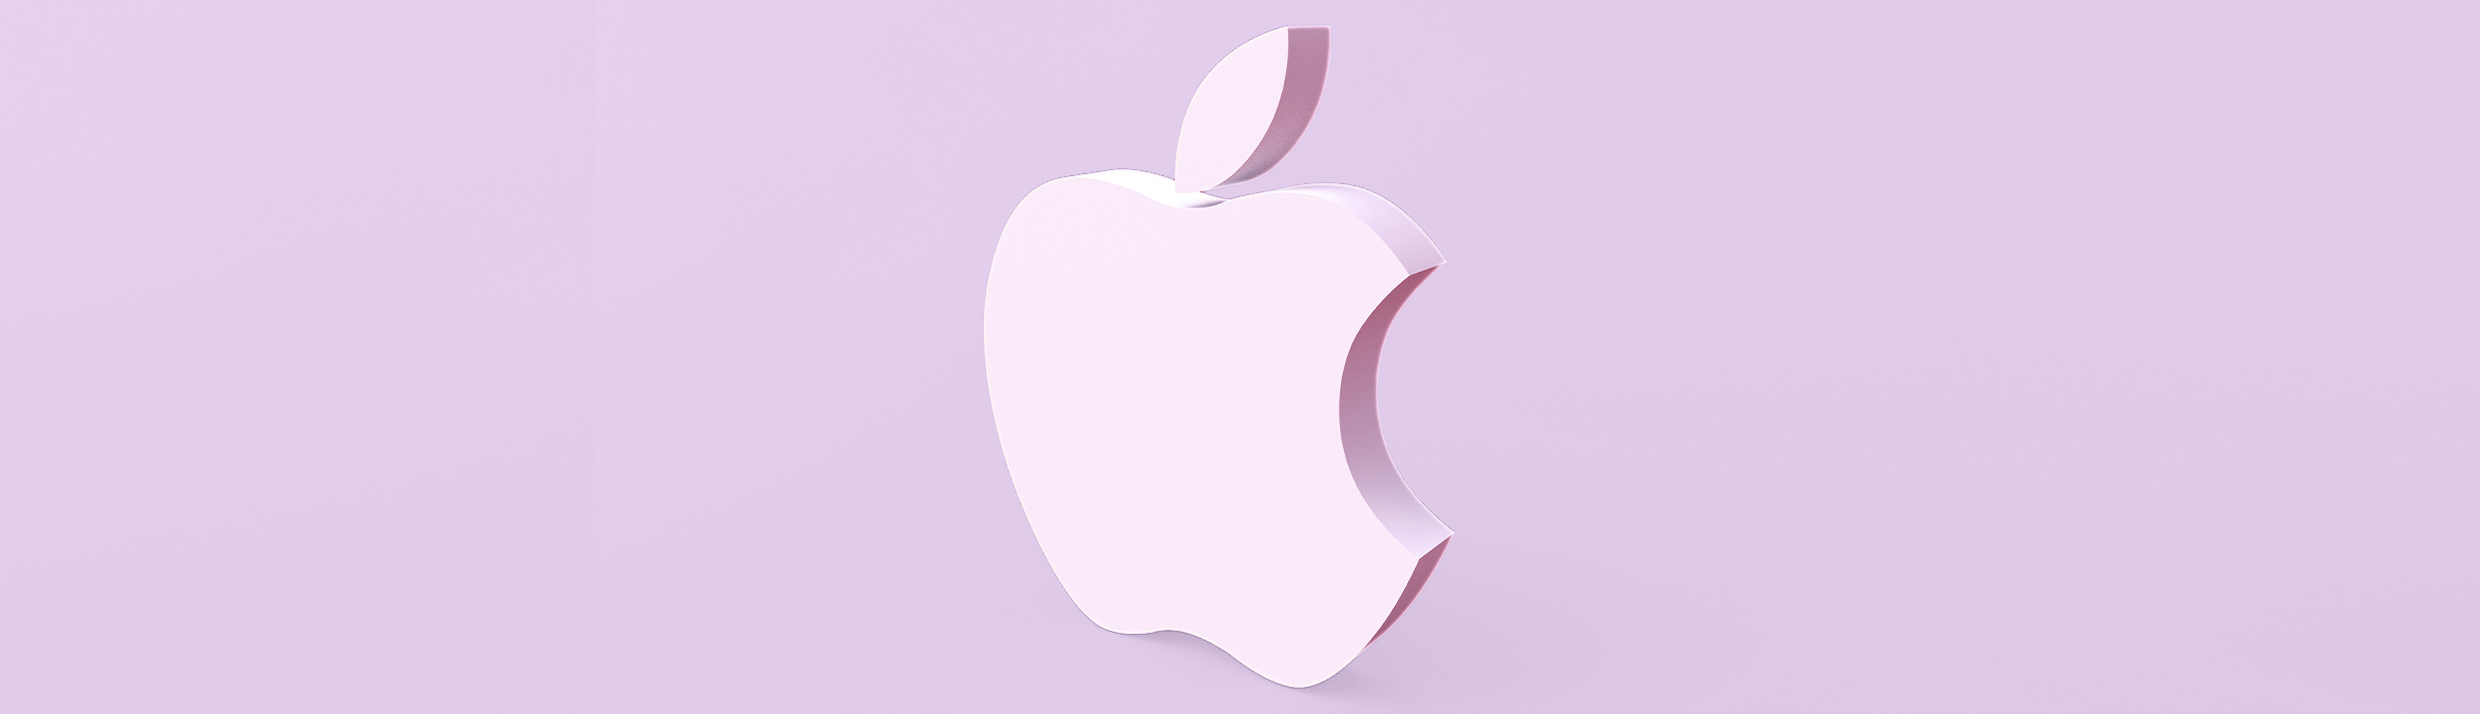 Le logo Apple est positionné au centre, le logo est d'une couleur violet clair qu'on retrouve également en arrière-plan.